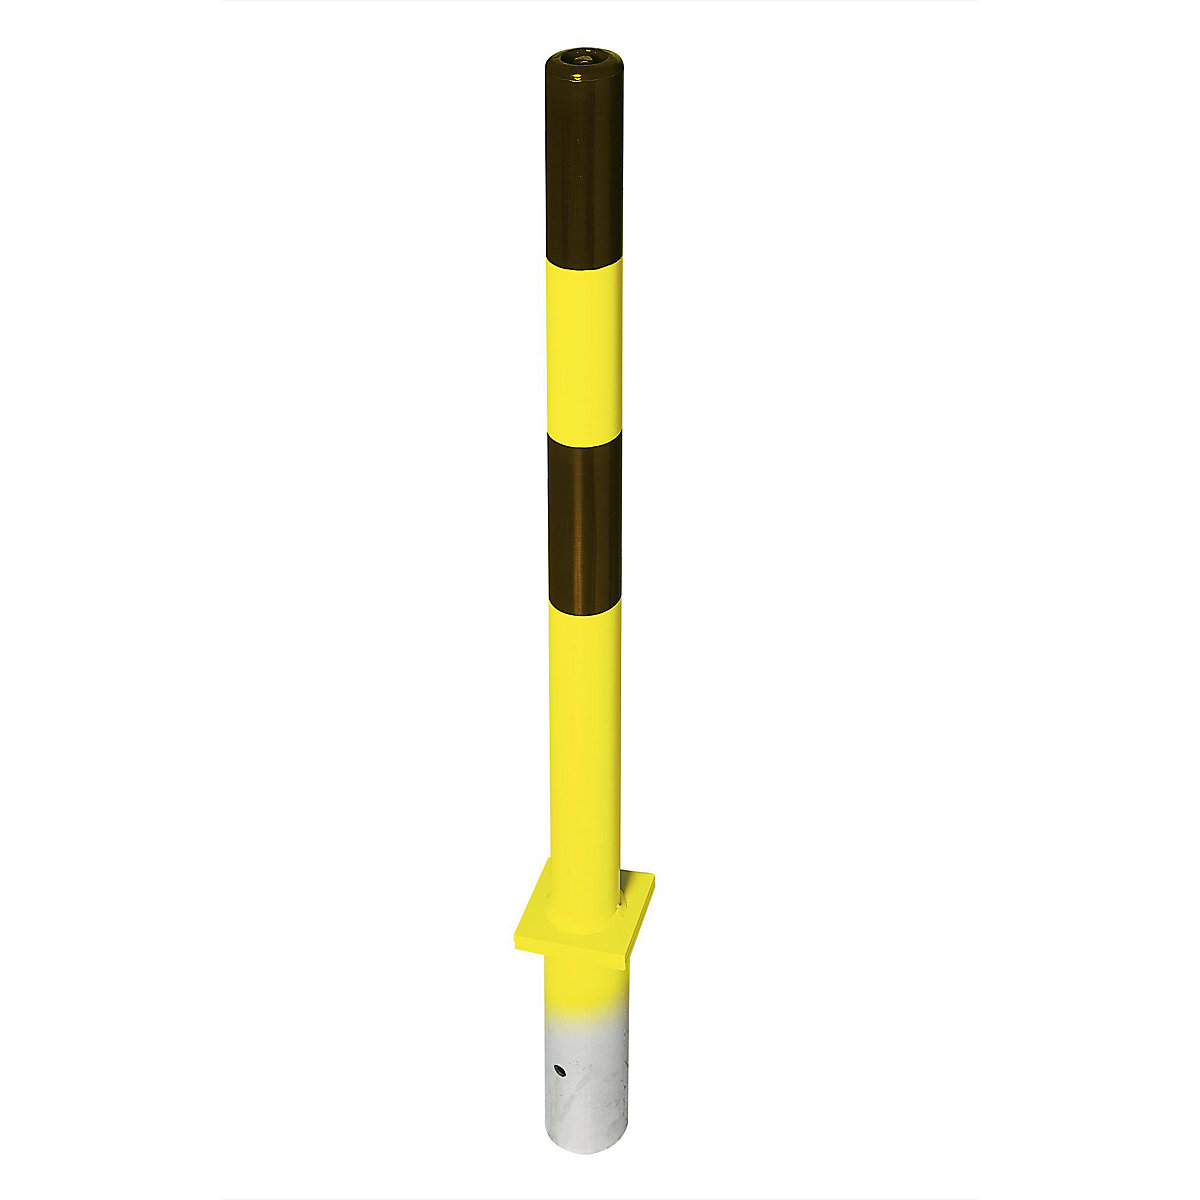 Čelični stup za ograđivanje, za betoniranje, Ø 76 mm, u crno-žutoj boji, 2 ušice lanaca-5